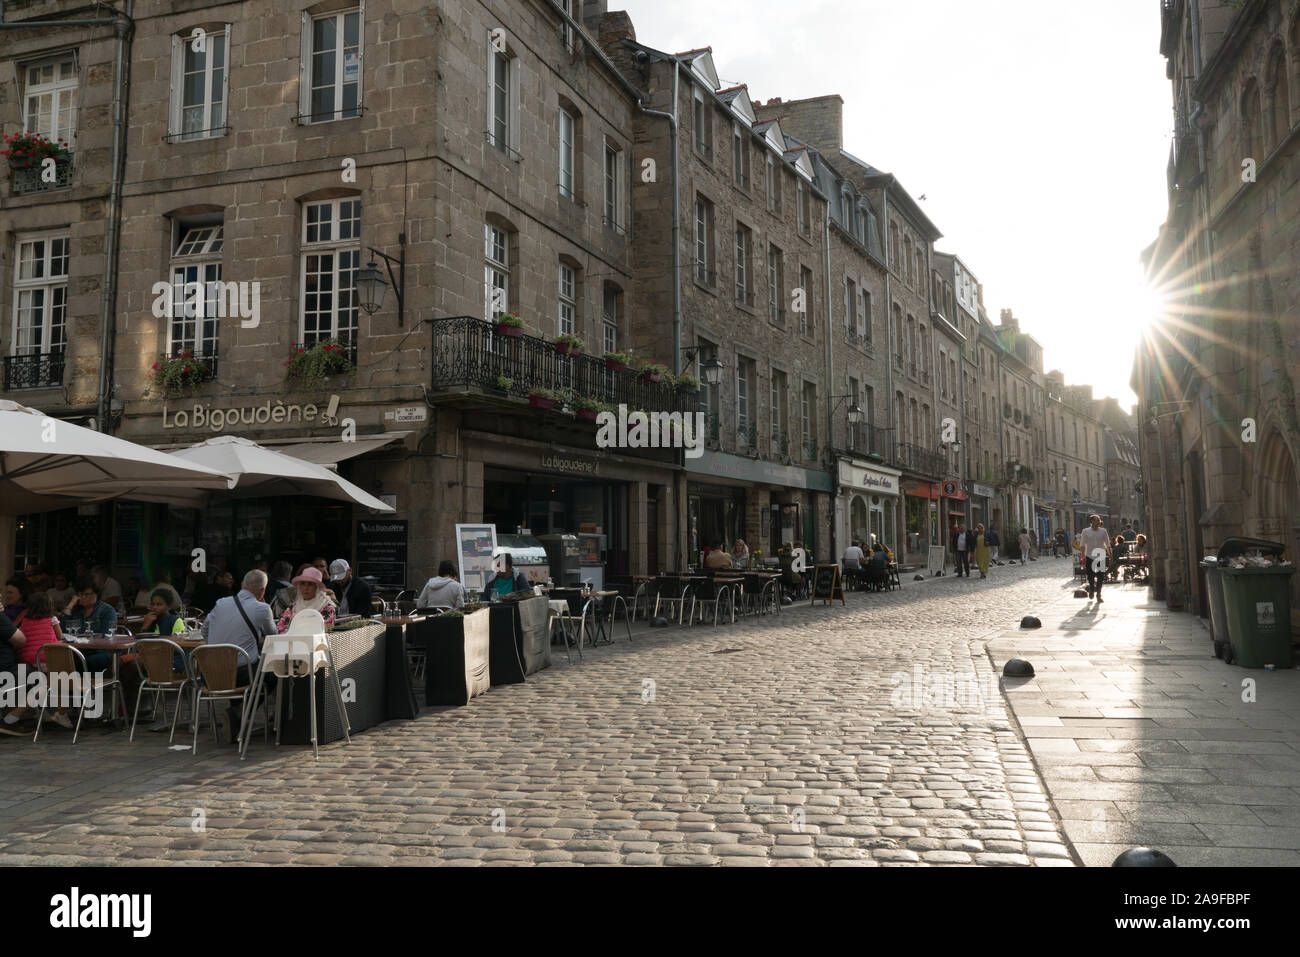 Les touristes profitez d'une visite dans la vieille ville historique de Dinan en Bretagne avec réglage de soleil Banque D'Images